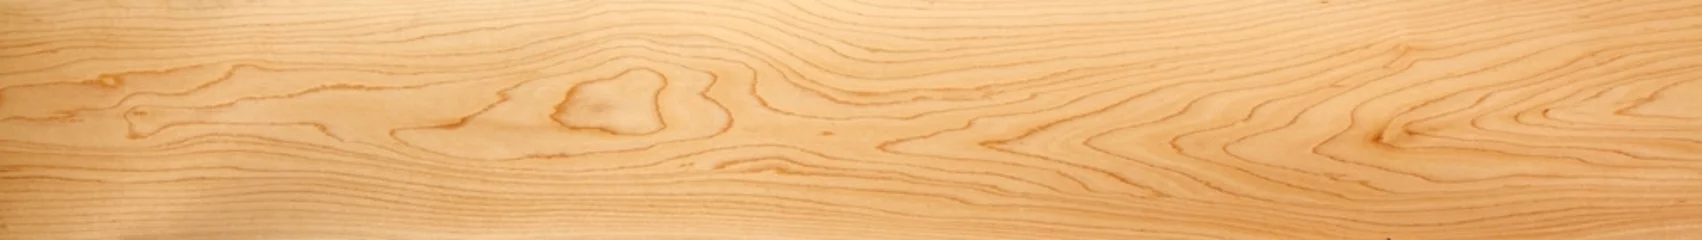 Fototapete Holz Perfektes, sehr langes &amp  breites Holzpanorama für Banner, Design und Header - in schönen Mustern mit natürlicher Holzmaserung.